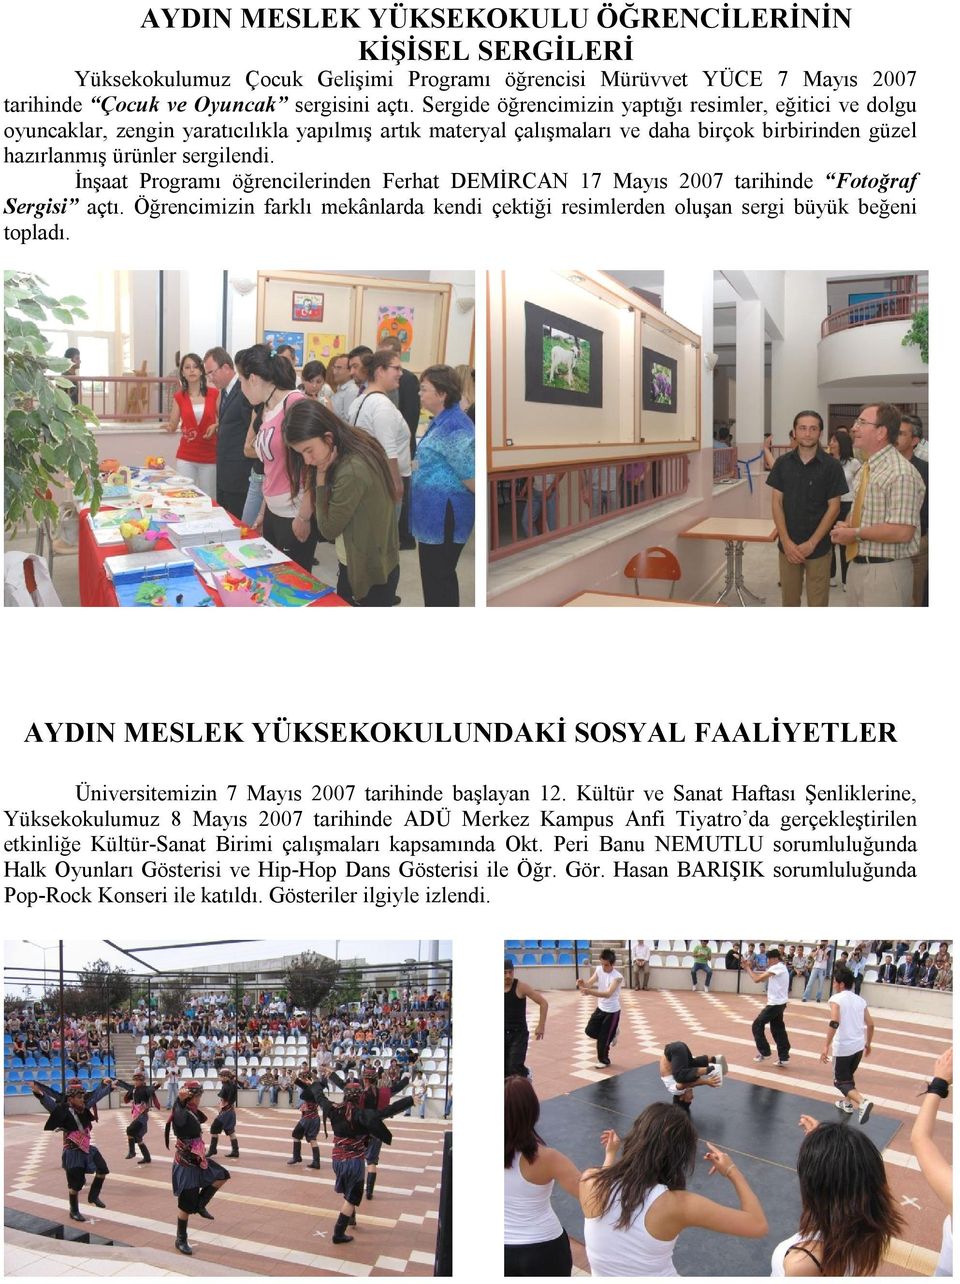 İnşaat Programı öğrencilerinden Ferhat DEMİRCAN 17 Mayıs 2007 tarihinde Fotoğraf Sergisi açtı. Öğrencimizin farklı mekânlarda kendi çektiği resimlerden oluşan sergi büyük beğeni topladı.